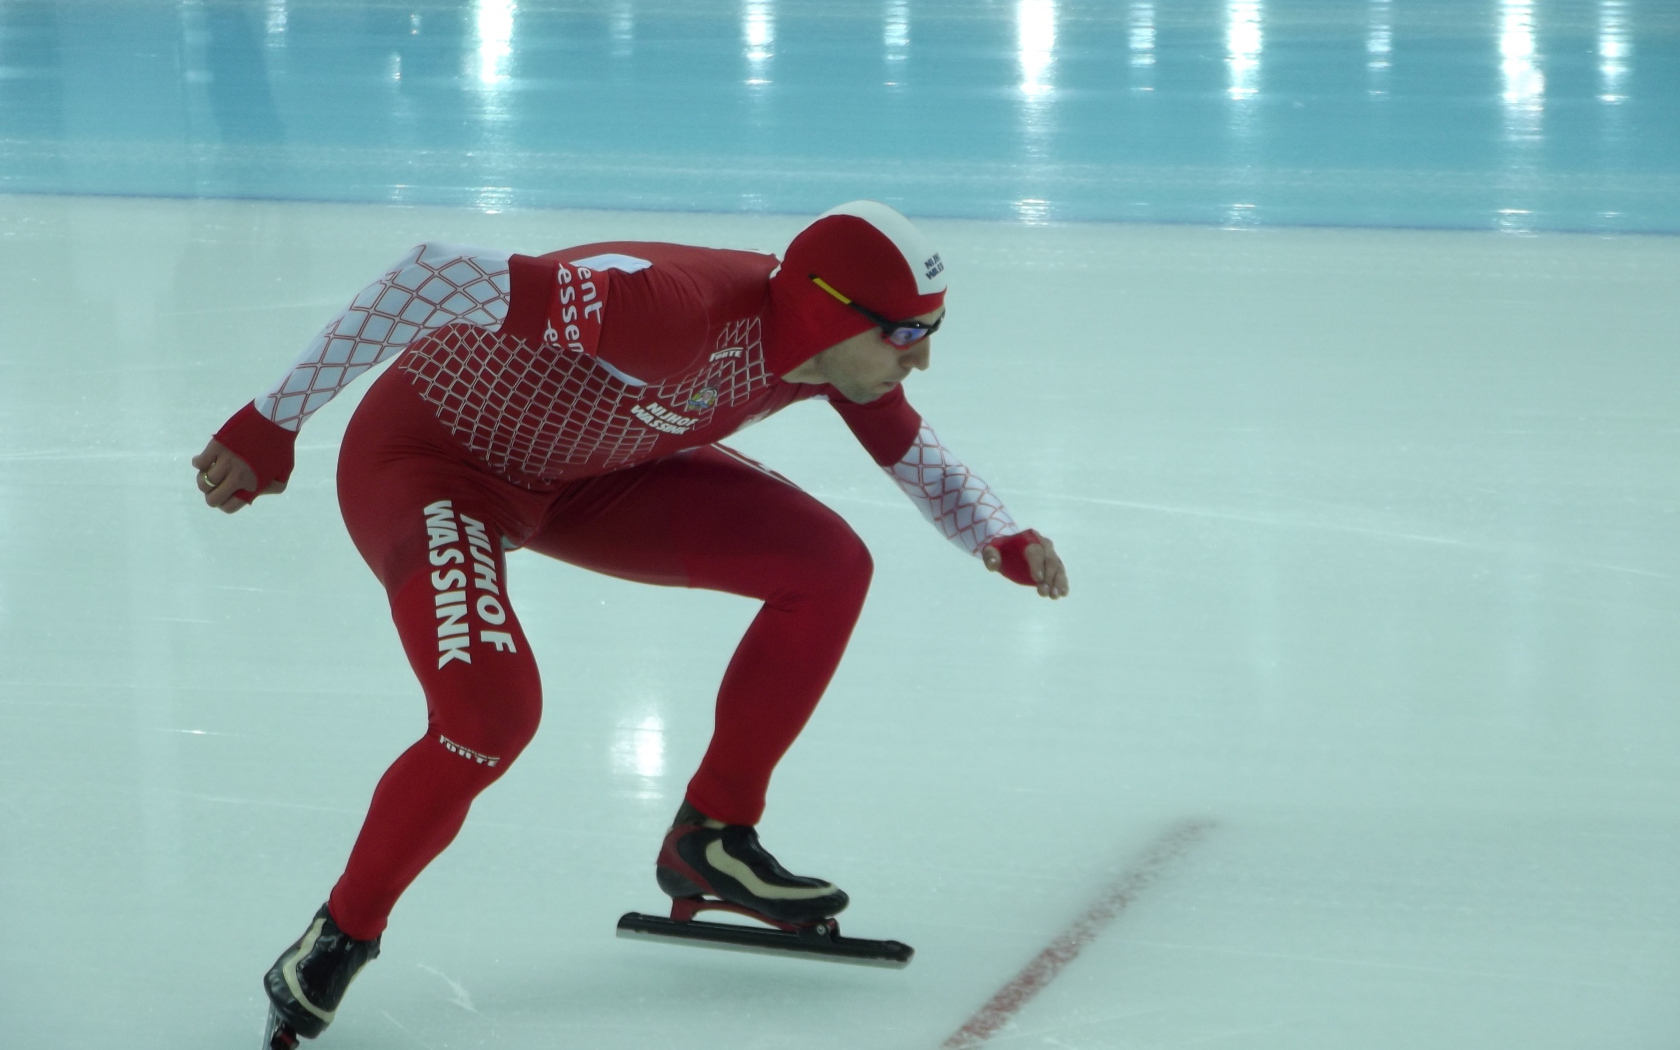 Збигнев Брудка польский конькобежец  обладатель золотой медали в Сочи